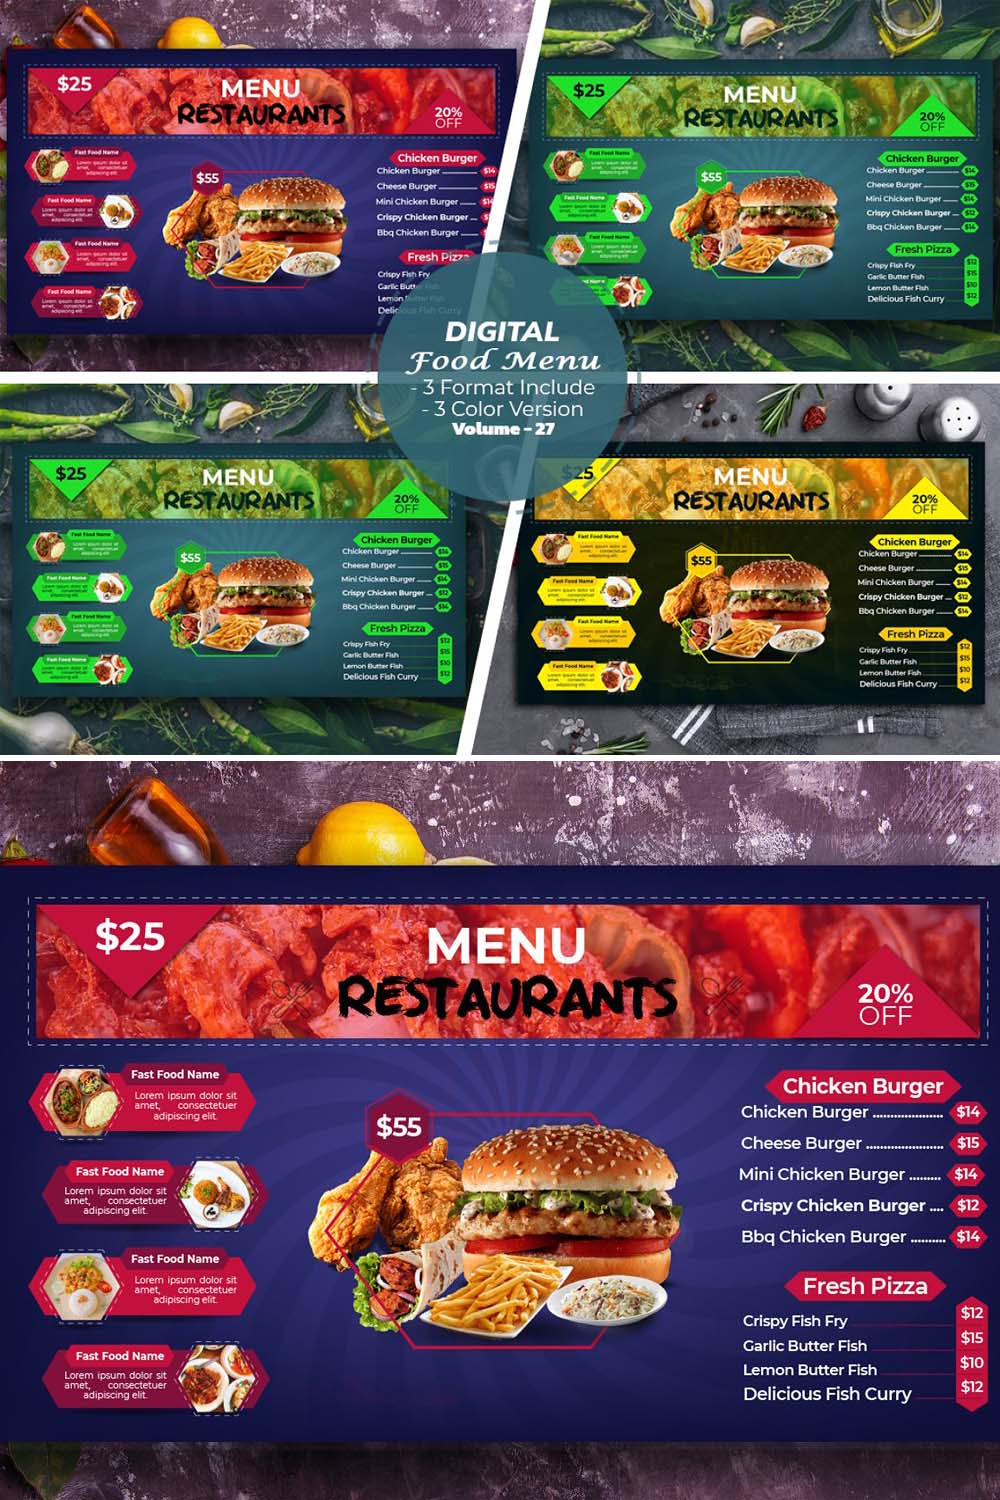 Digital Food Menu Design Template V-27 pinterest preview image.